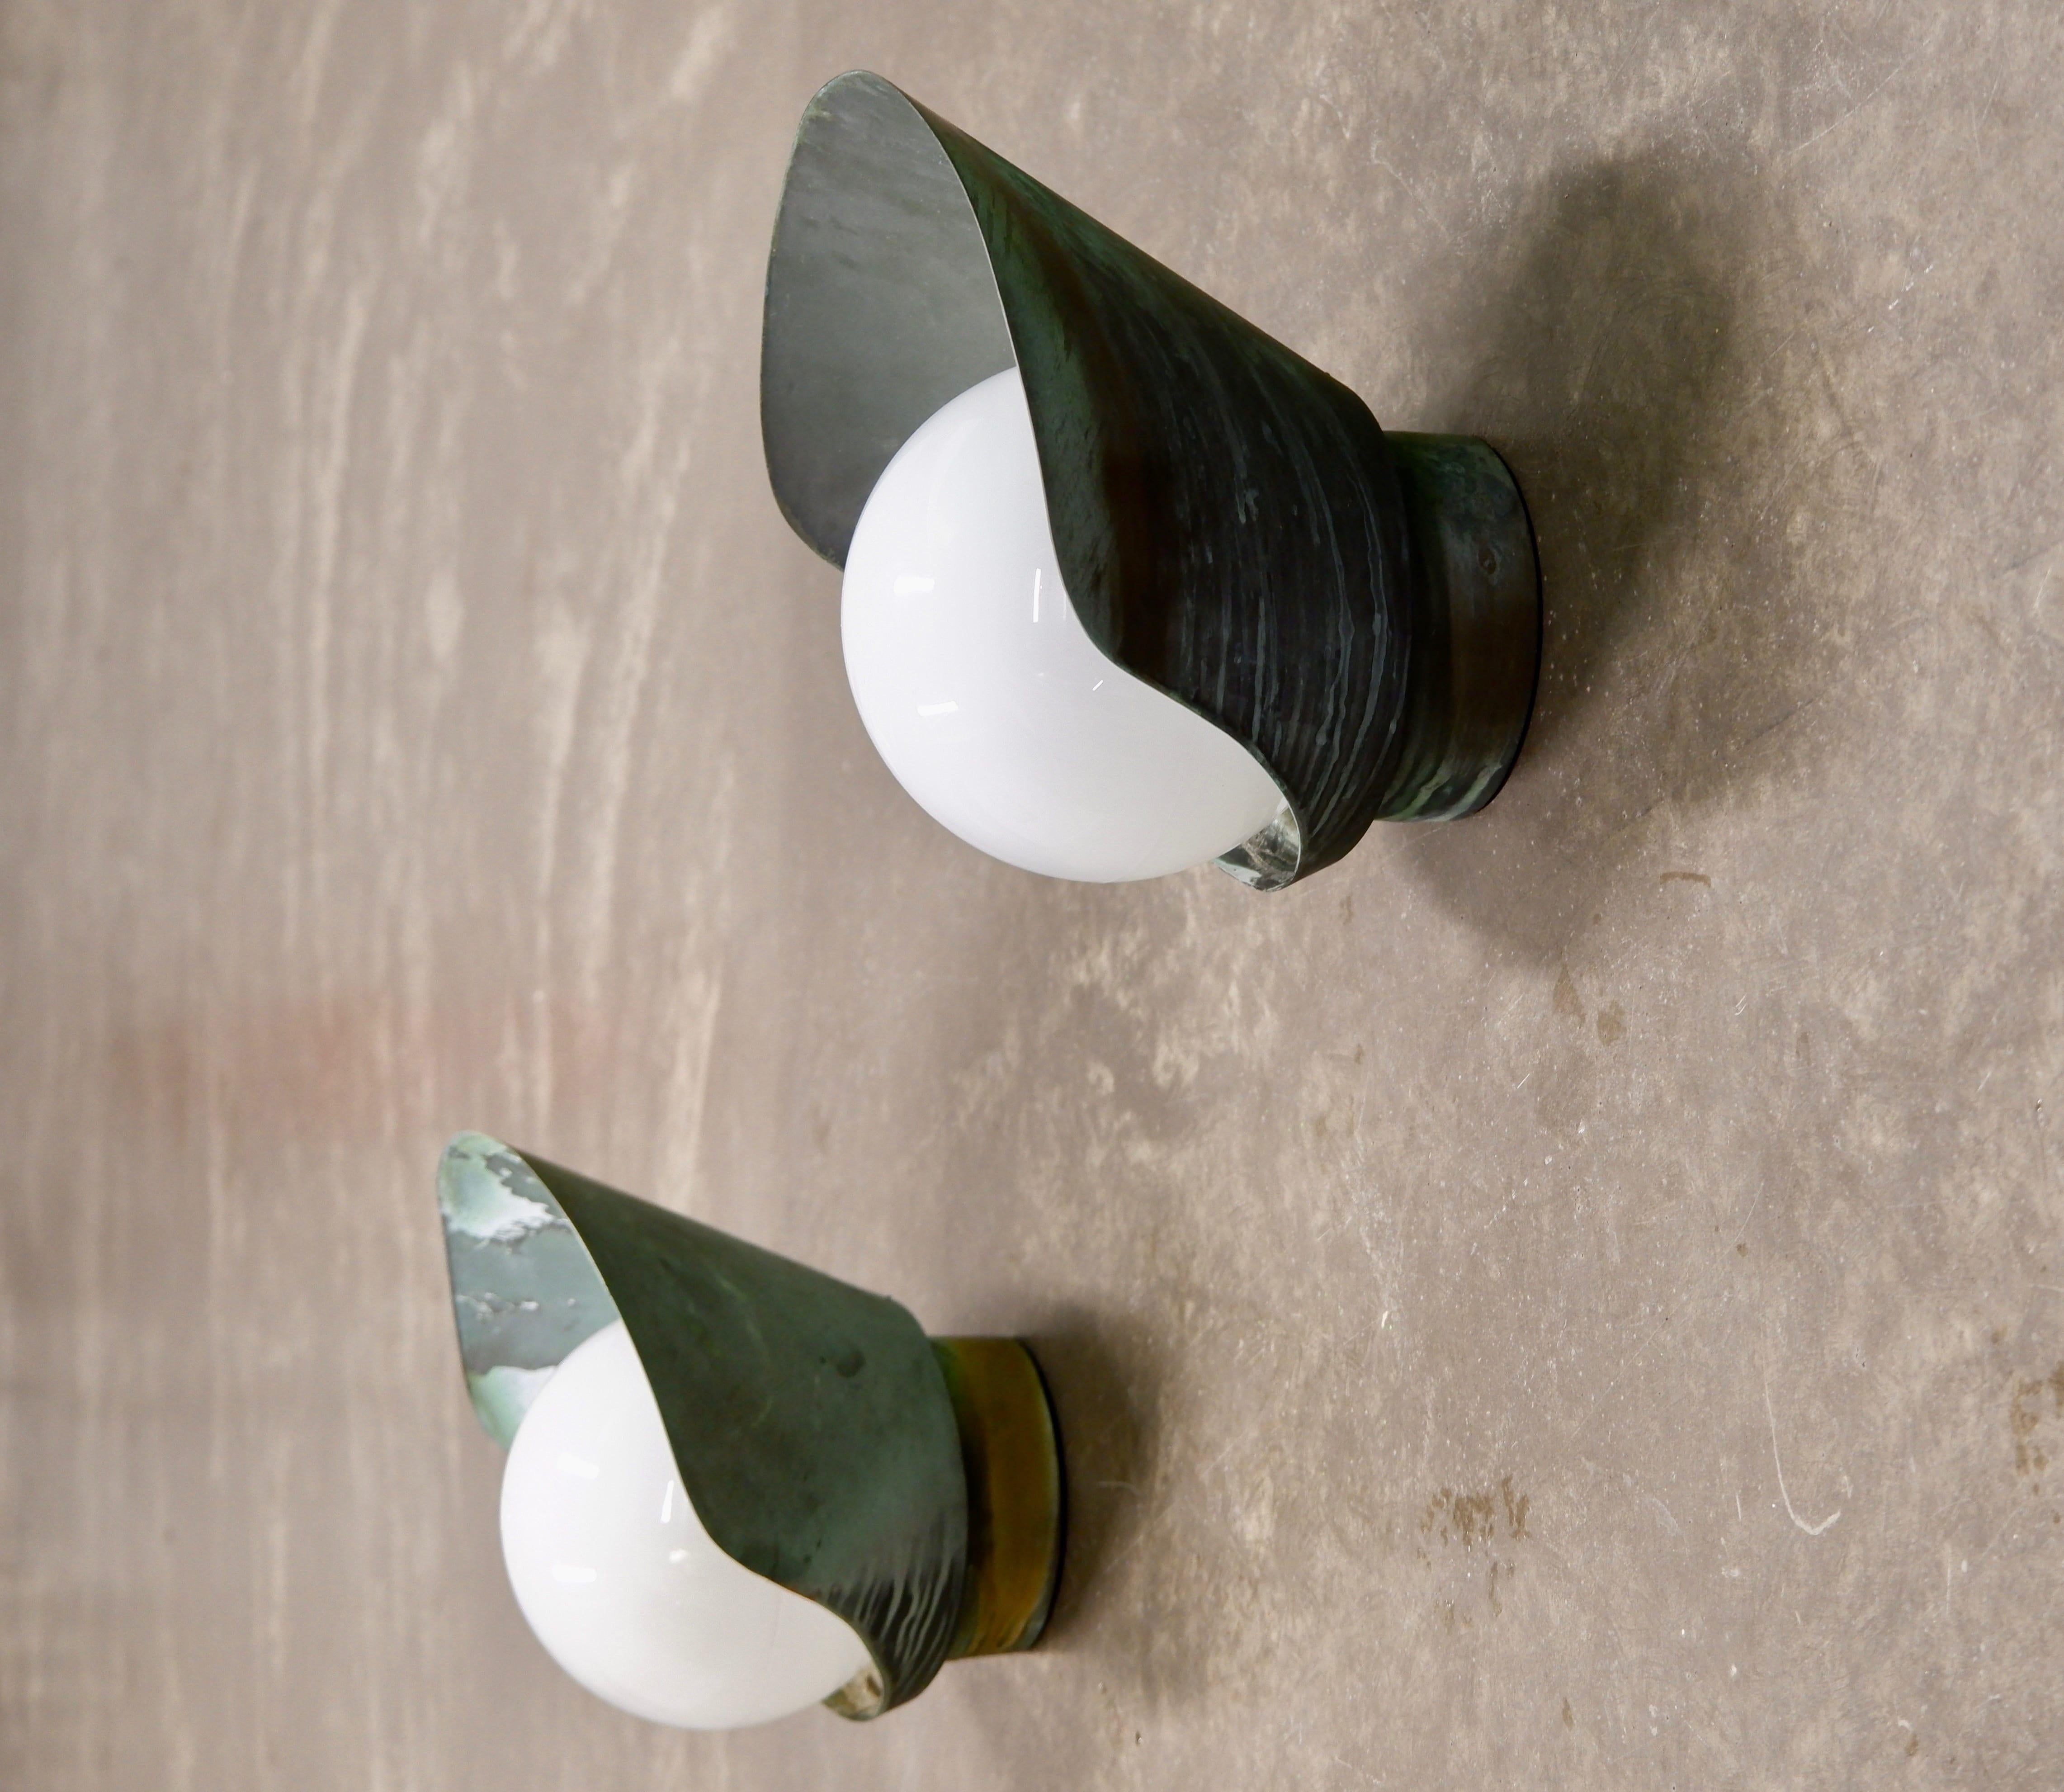 Patiniertes und schönes Paar Paavo Tynell Wandlampen aus Kupfer und hergestellt von TAITO oy in den 1940er Jahren. Die Lampen sind beide mit einem massiven, kupferfarbenen Schirm versehen und haben in der Mitte eine runde Opaline. Beide Lampen